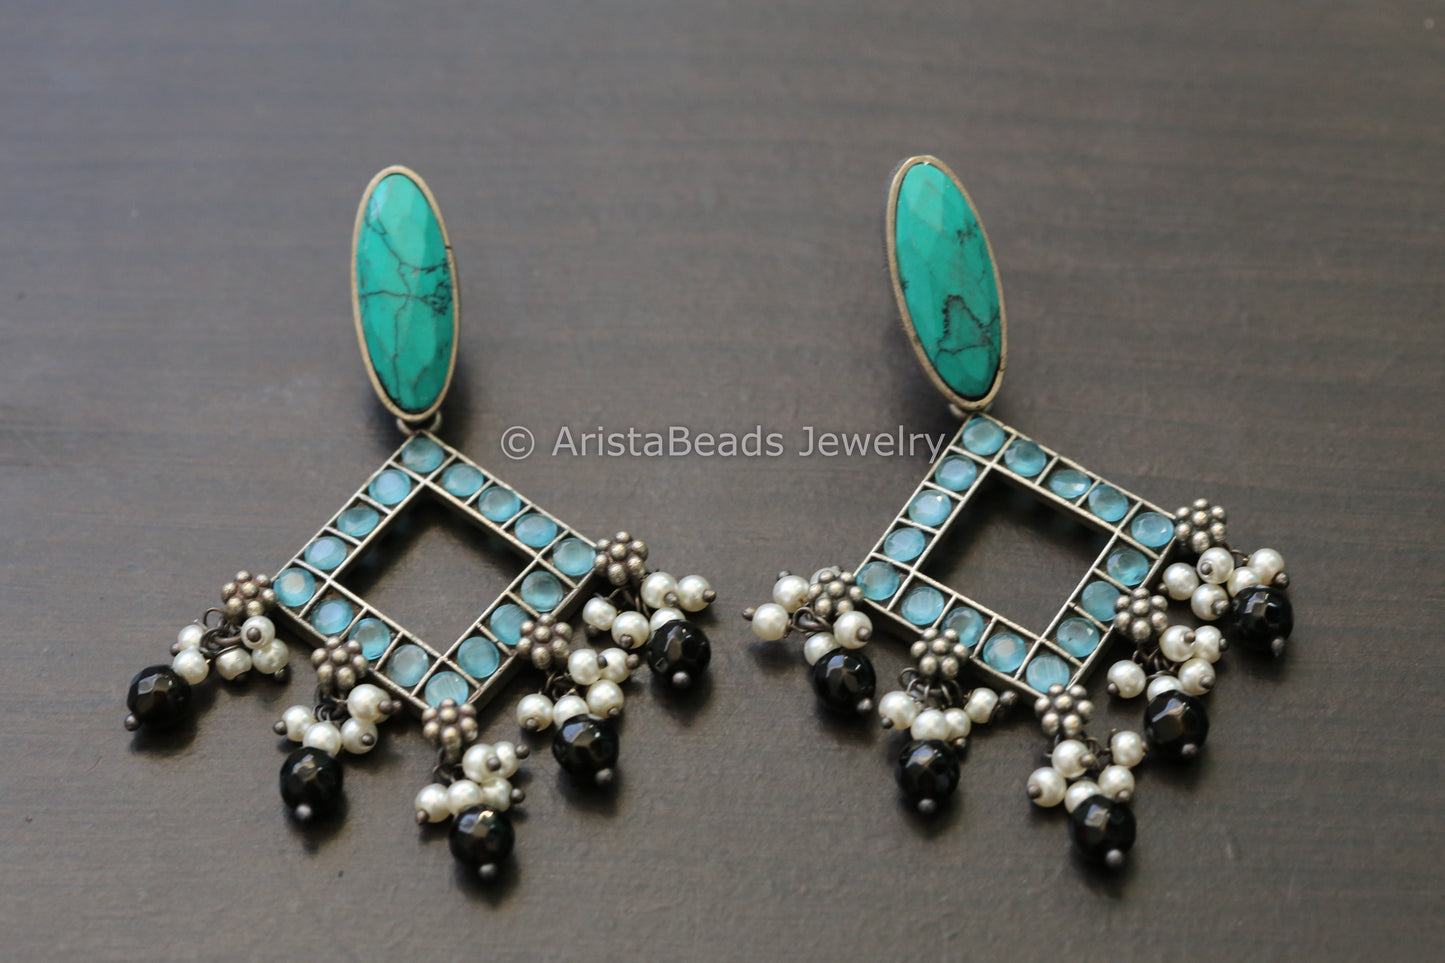 Monalisa Stone Earrings - Turquoise